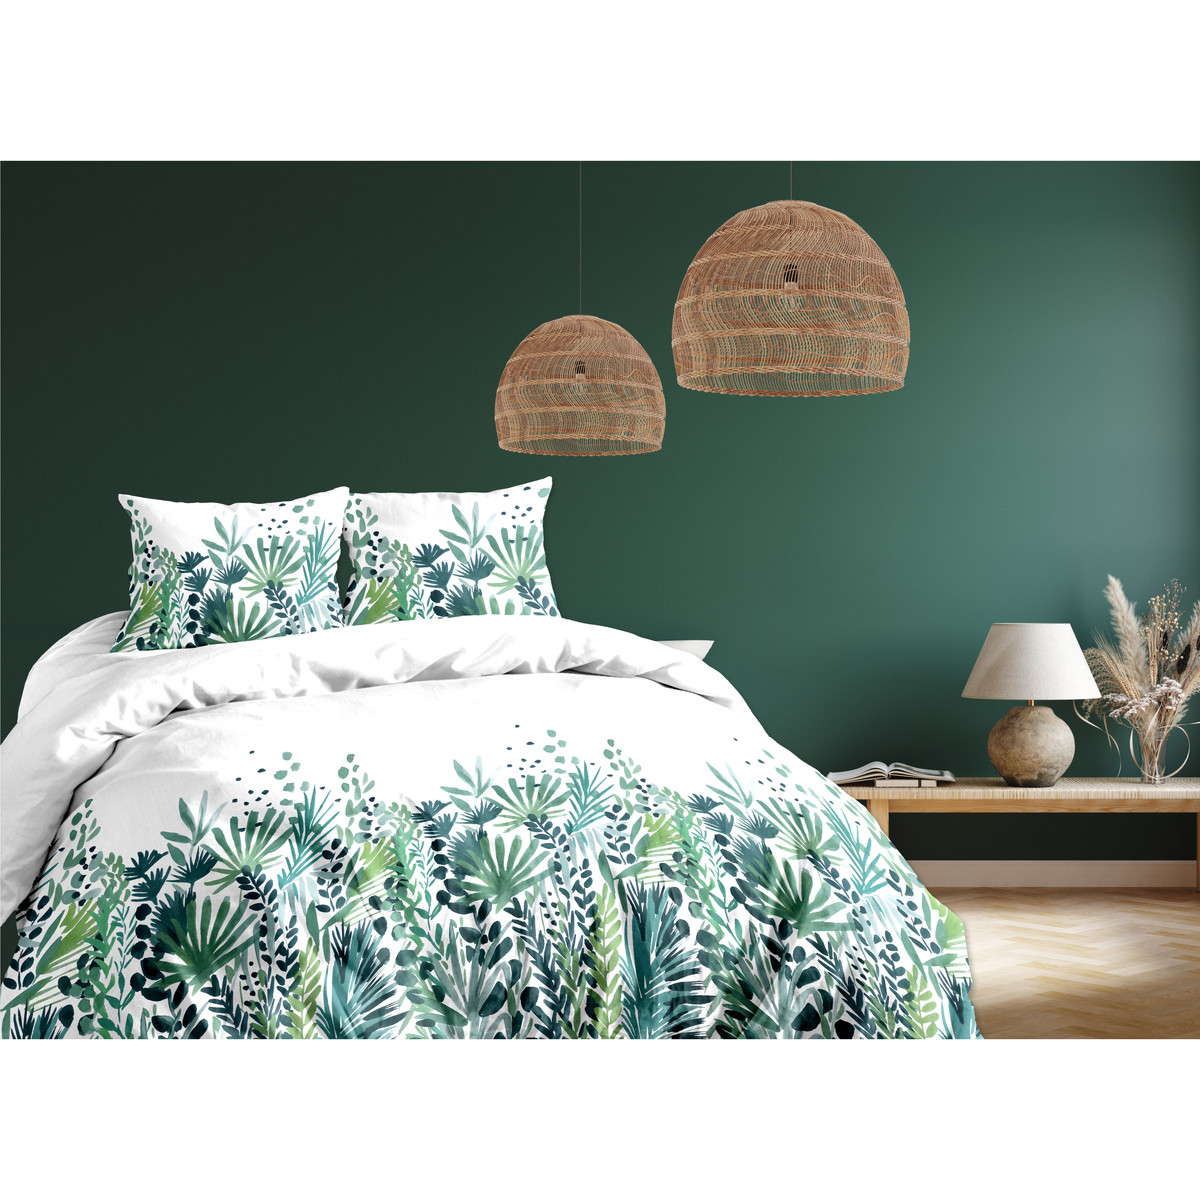 Home Bed linen Calitex WINNY VERT 260x240 Green